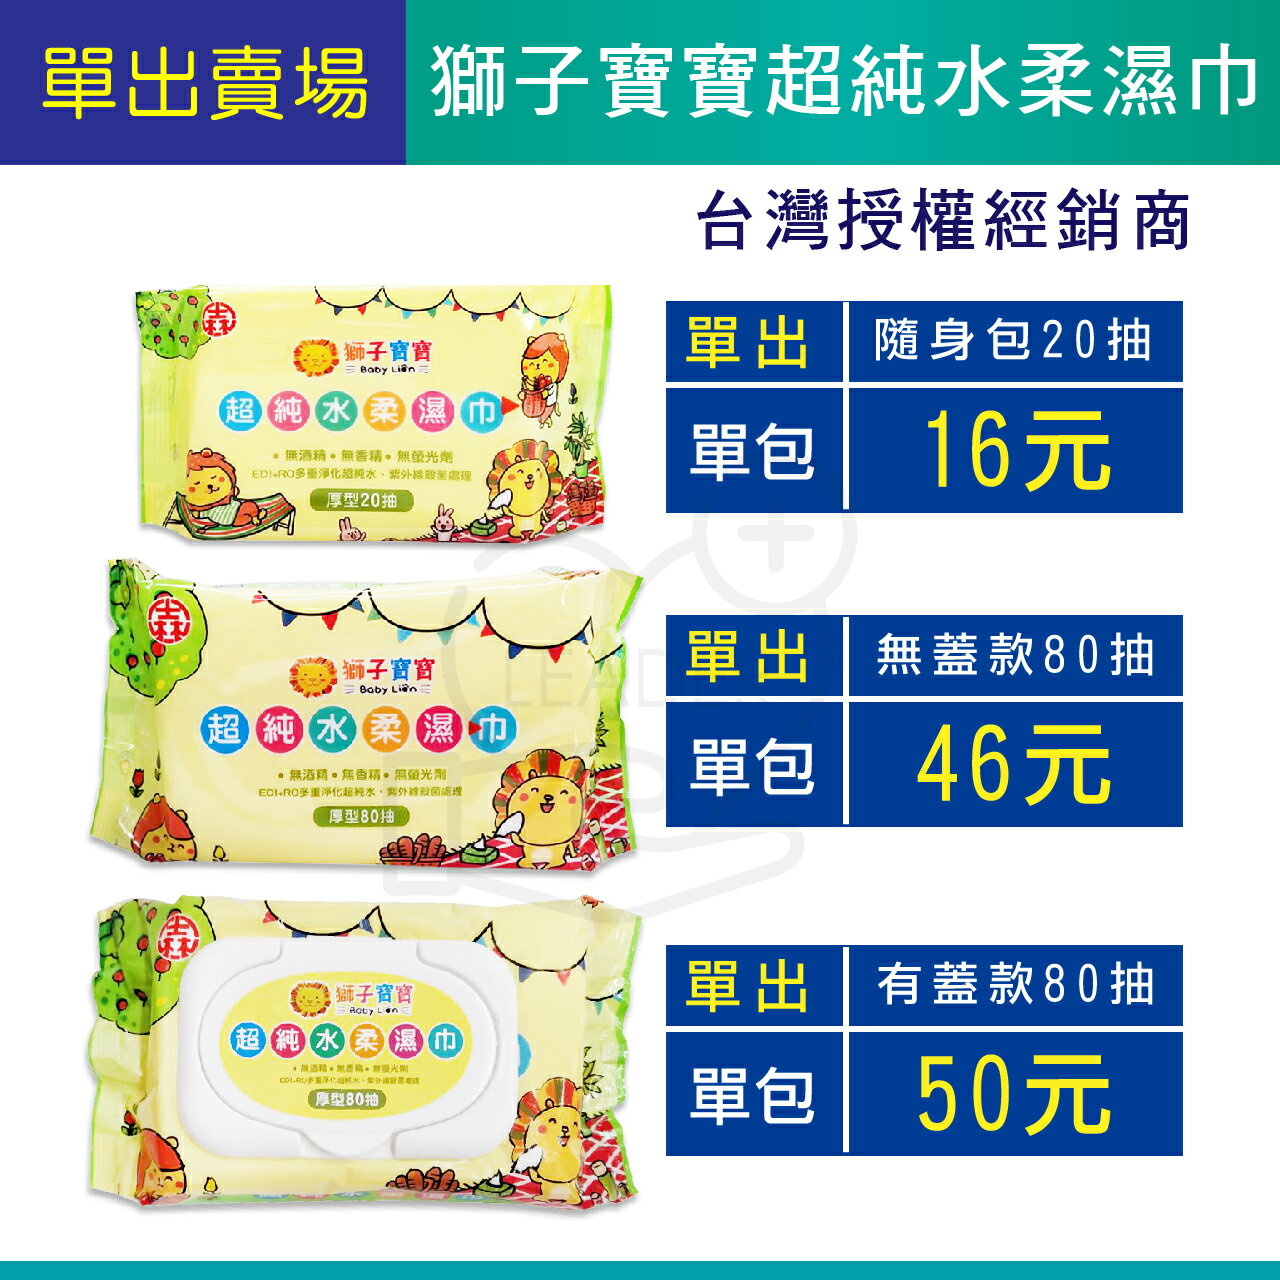 紙巾 濕紙巾 獅子寶寶 發票 免運 貝恩 南六 厚 台灣製造 80抽 20抽 有蓋 無蓋 外出型